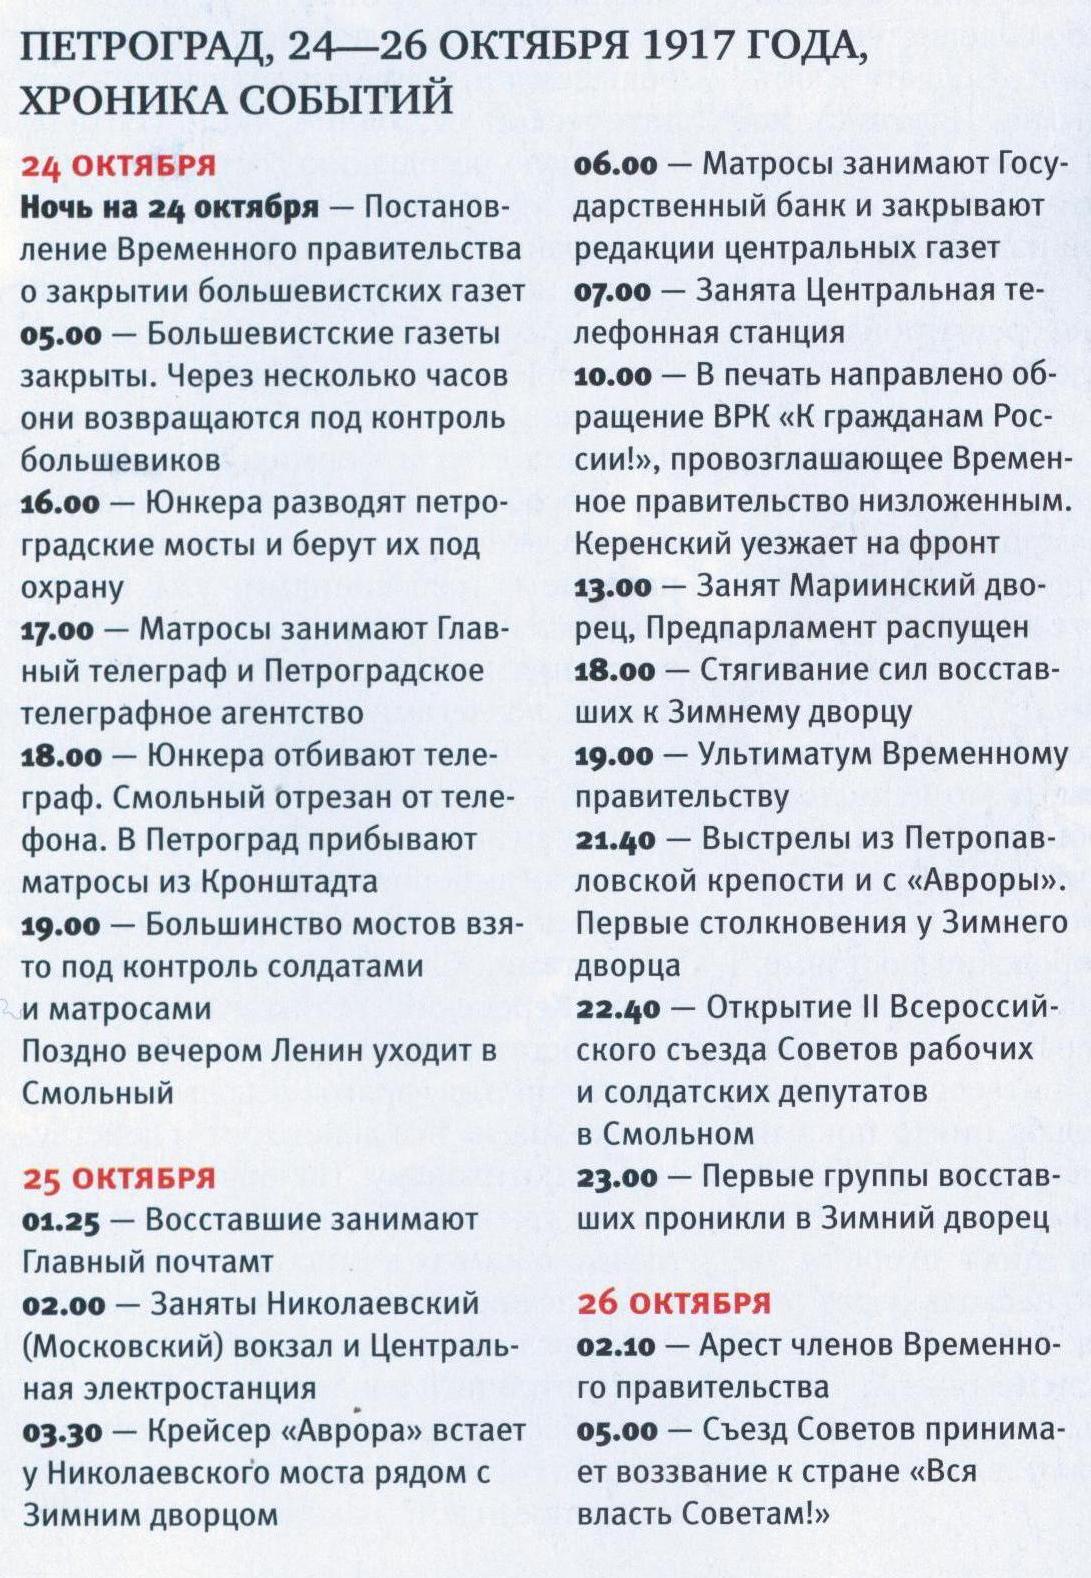 Хроника событий в Петрограде в 24-26 октября 1917 года, журнал «Вокруг света» №11-2008